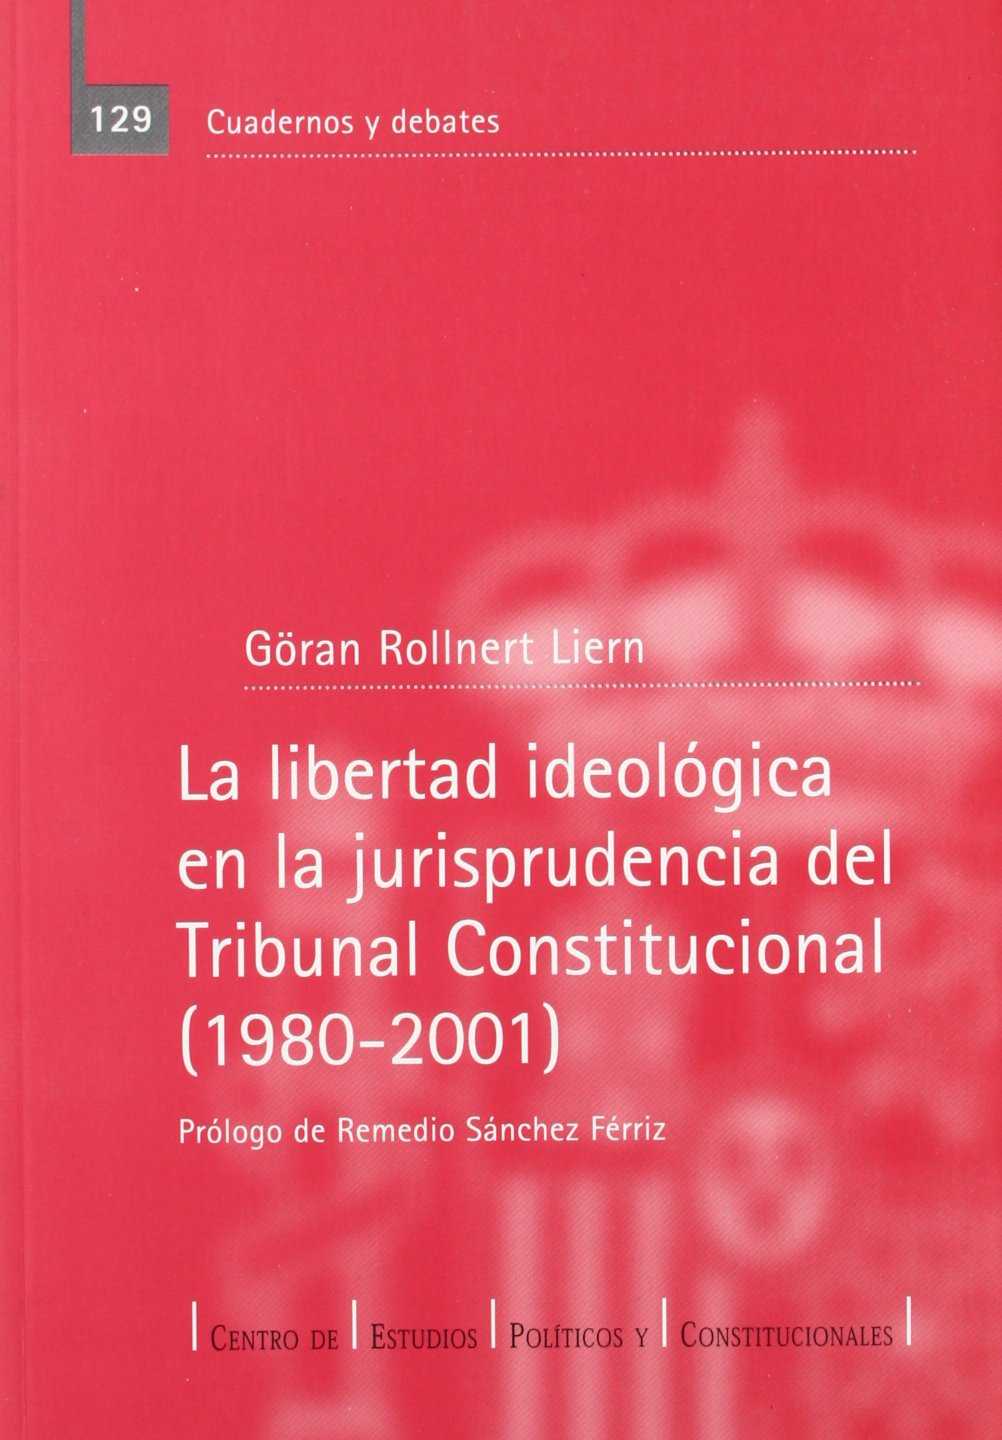 La libertad ideológica en la jurisprudencia del Tribunal Constitucional (1980-2001)